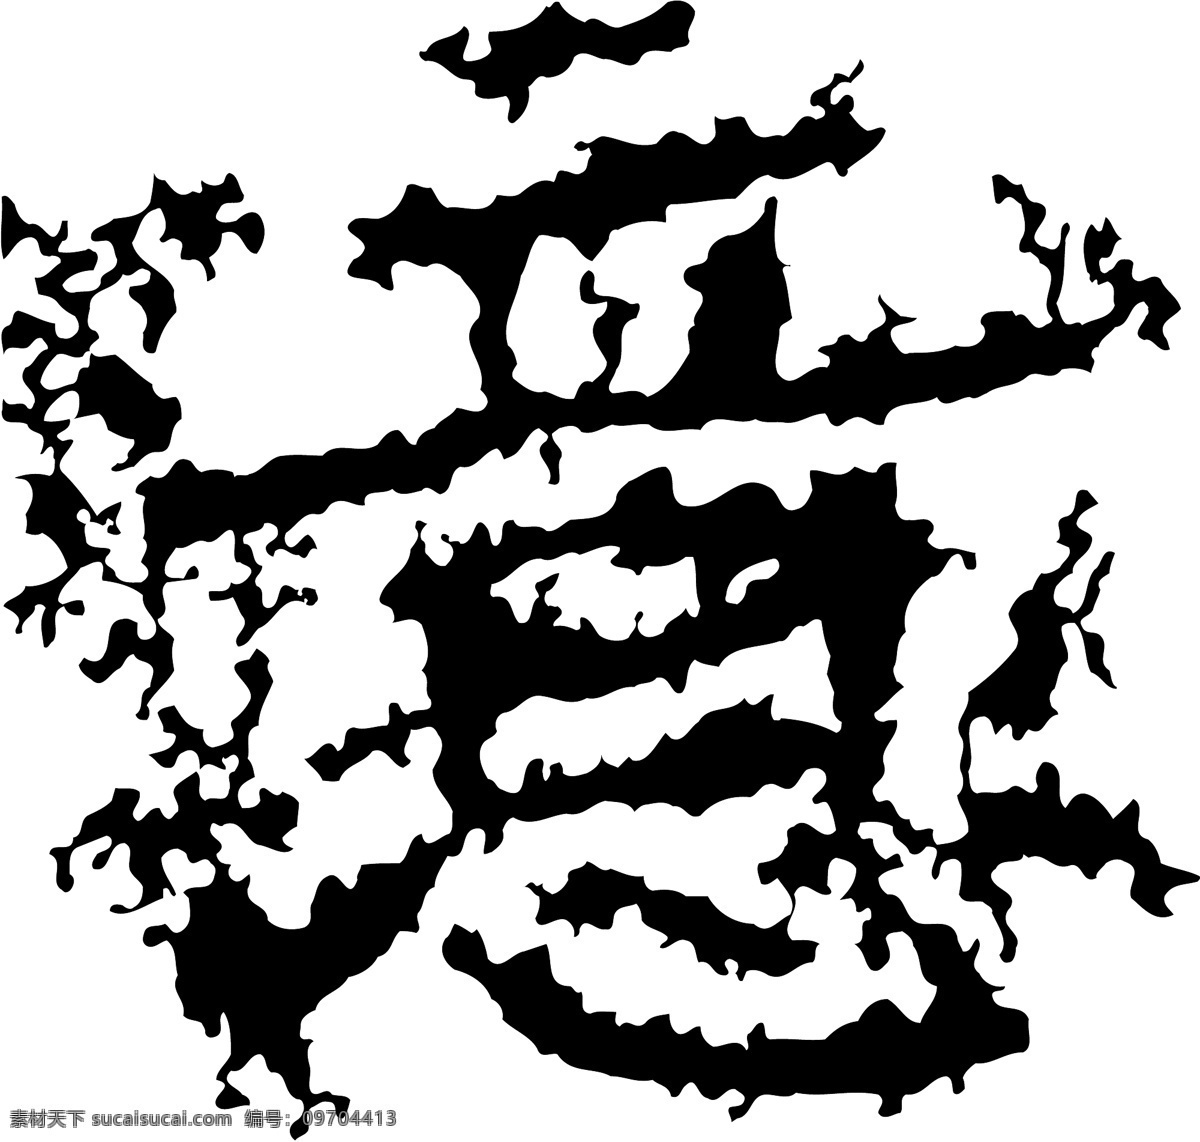 意 书法 汉字 十三画 传统艺术 矢量 格式 ai格式 设计素材 十三画字 瀚墨宝典 矢量图库 白色